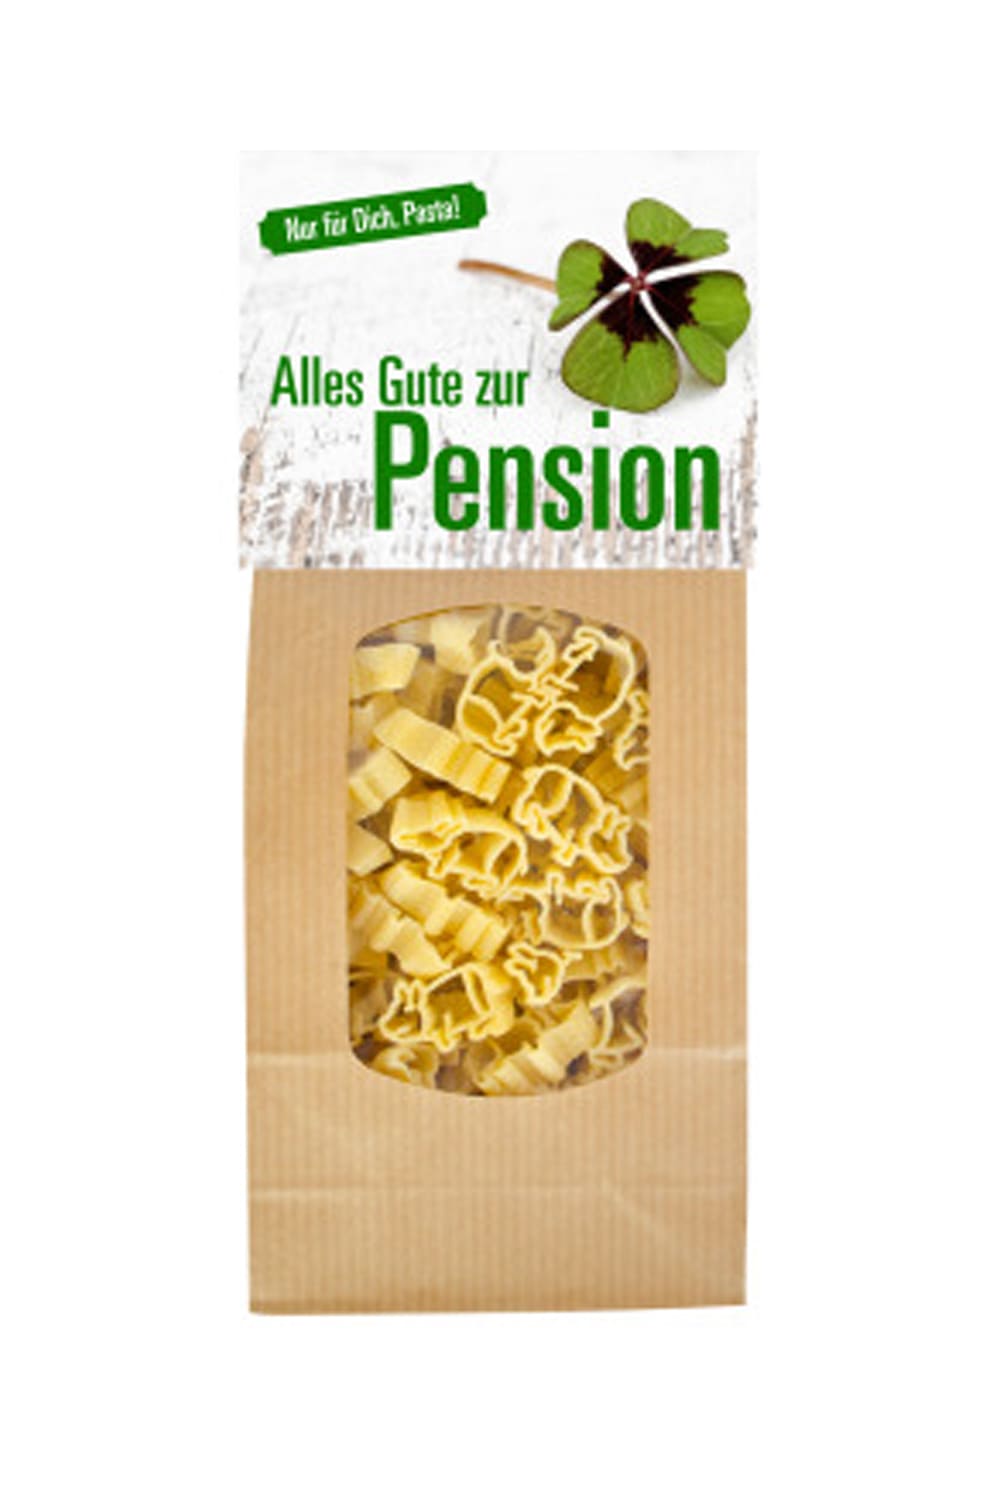 Pension Pasta mit Gluecksschweinchen. Grossartiges Pensionsgeschenk mit dem Spruch: Alles Gute zur Pension. Leckeres Pasta Geschenk